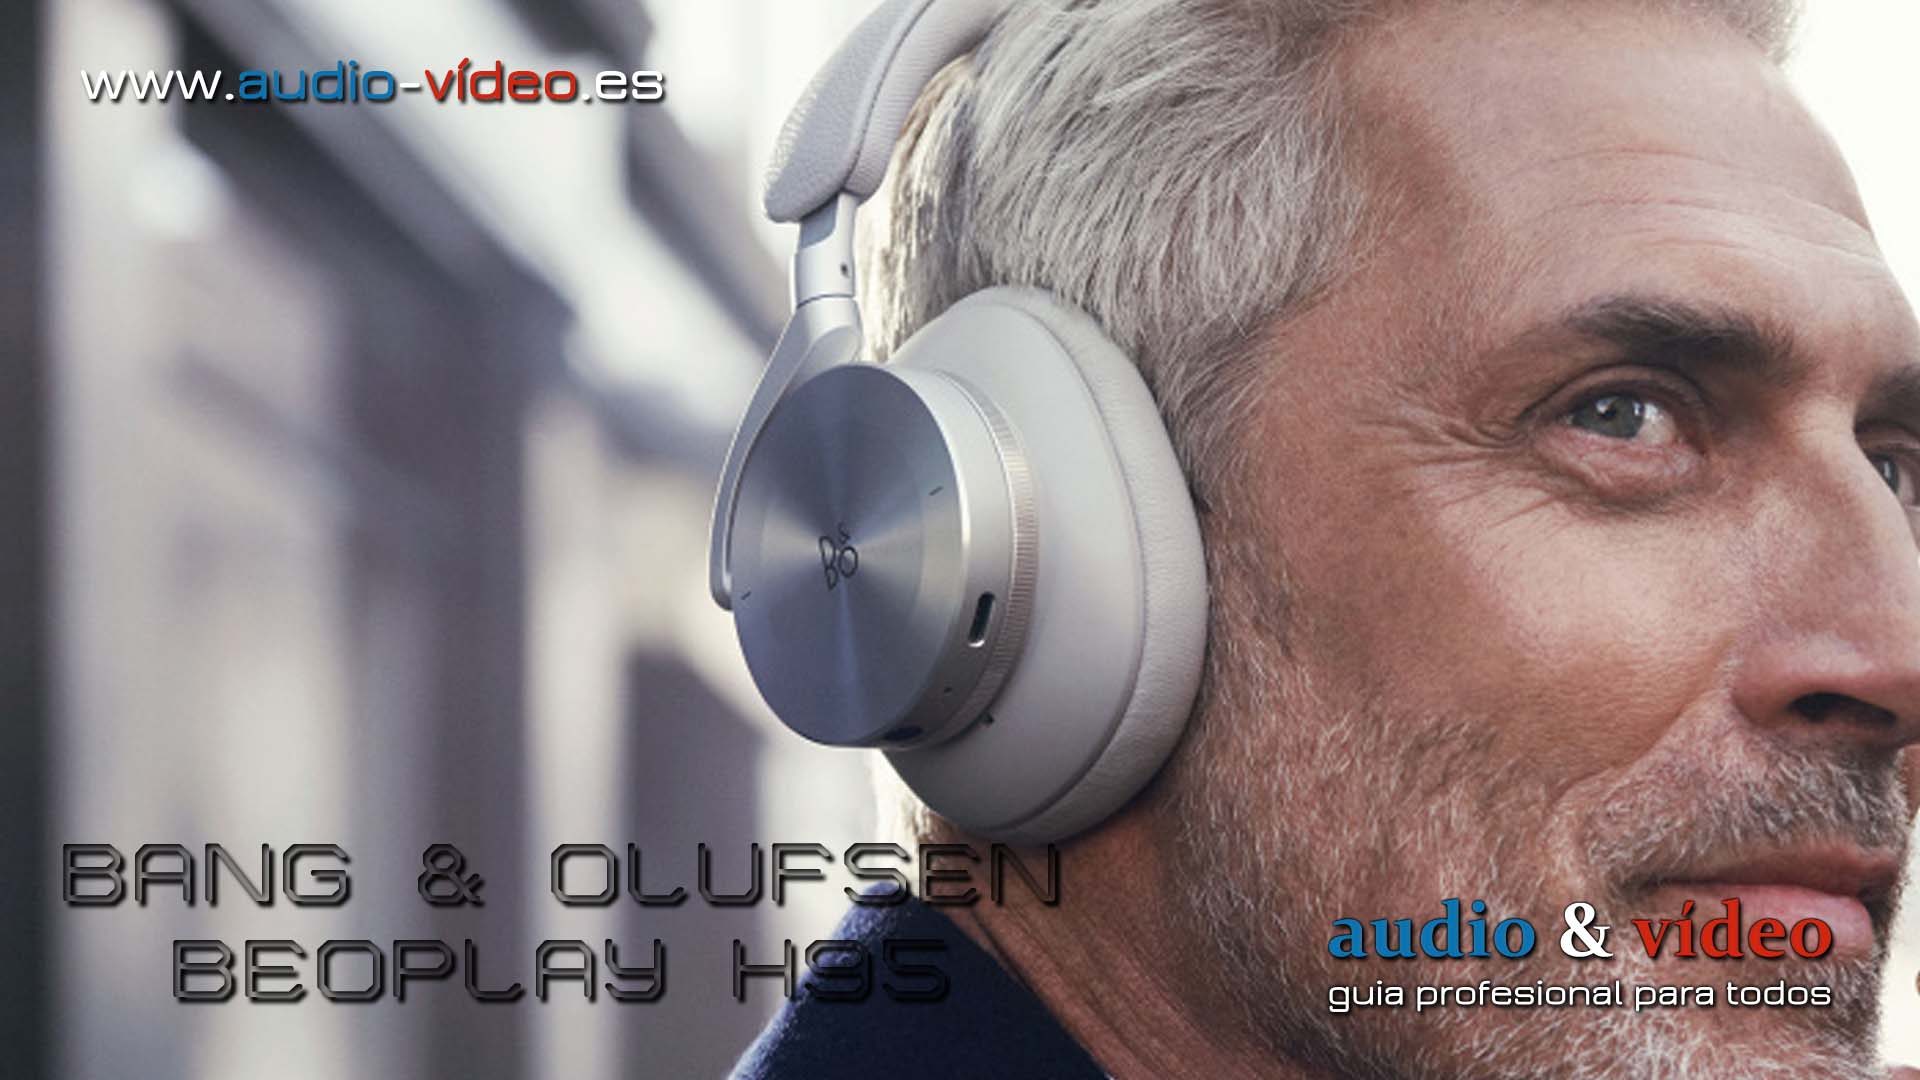 Auriculares Beoplay H95 de Bang & Olufsen prometen un rendimiento de primera clase